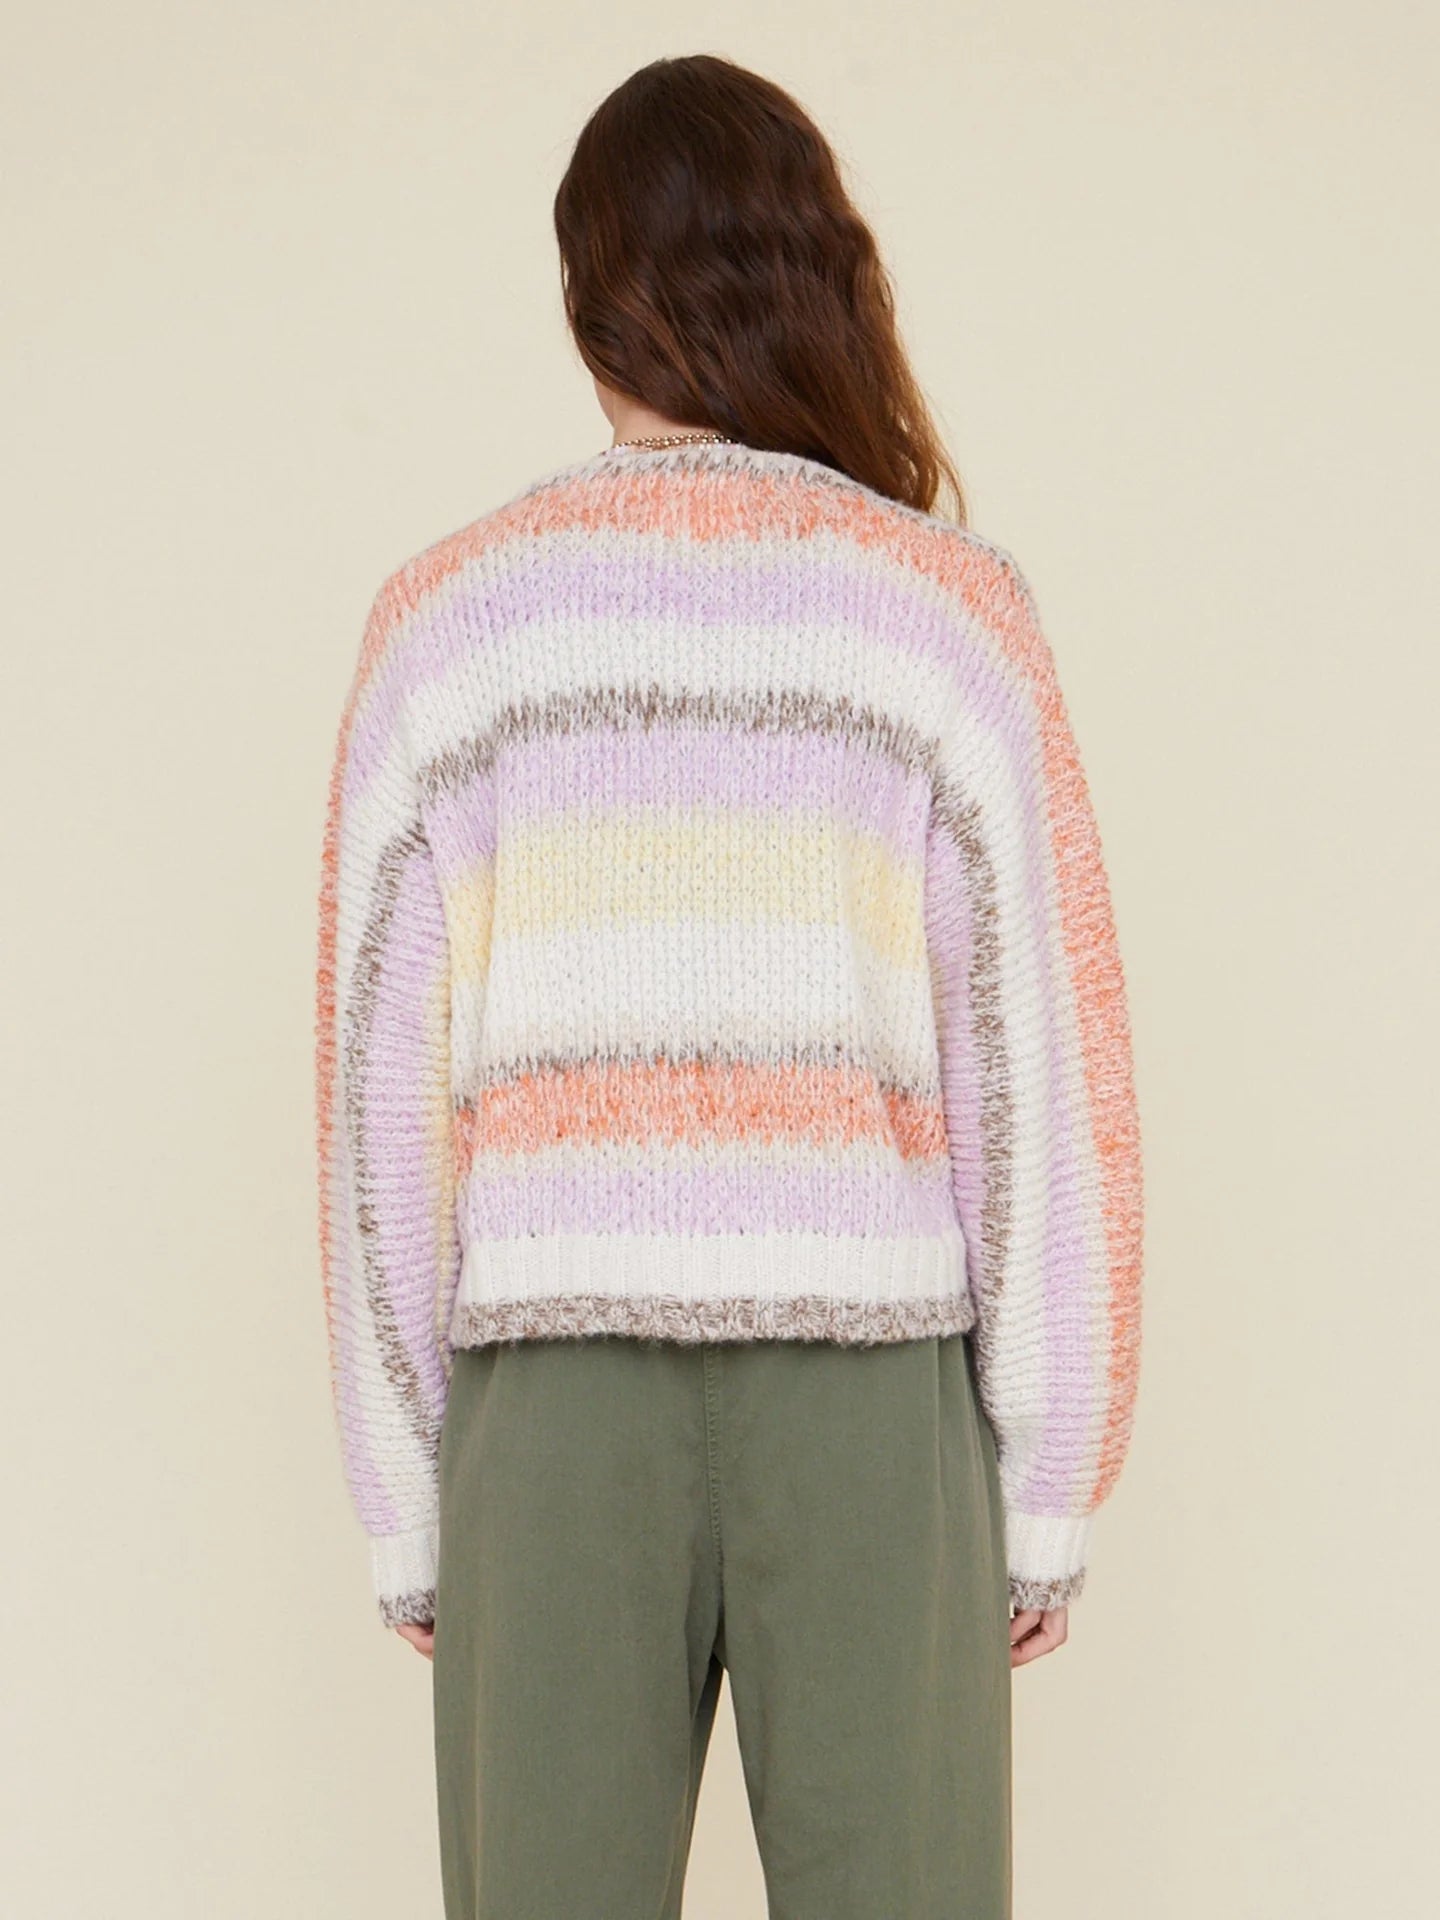 Laramie Sweater in Cream Sunrise